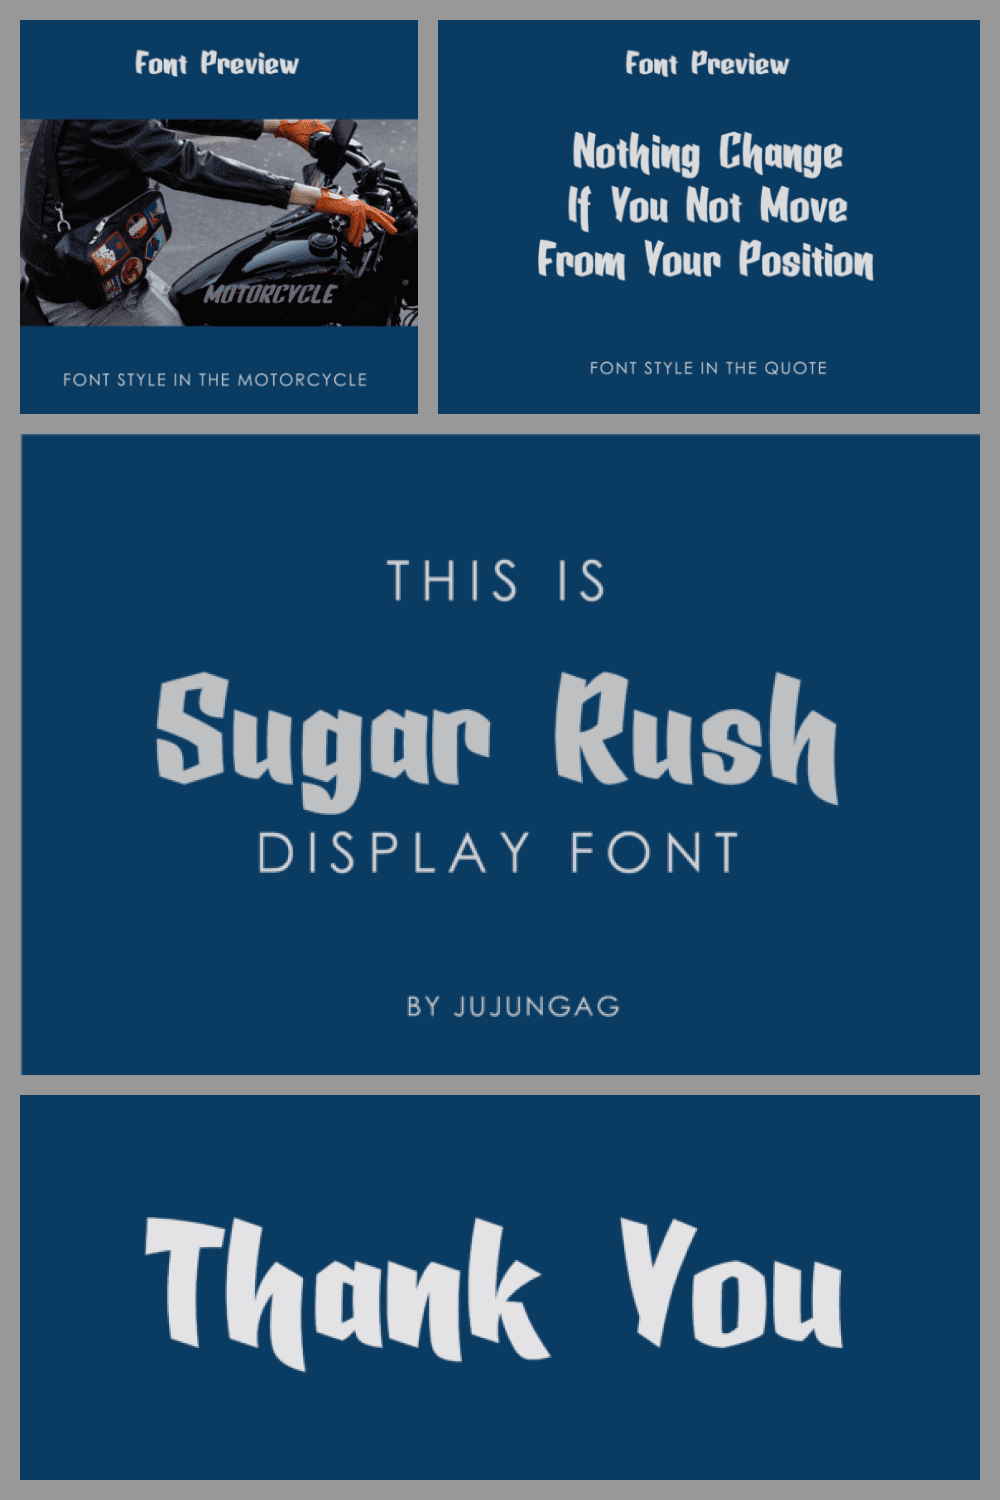 Sugar Rush Display Font - MasterBundles - Pinterest Collage Image.